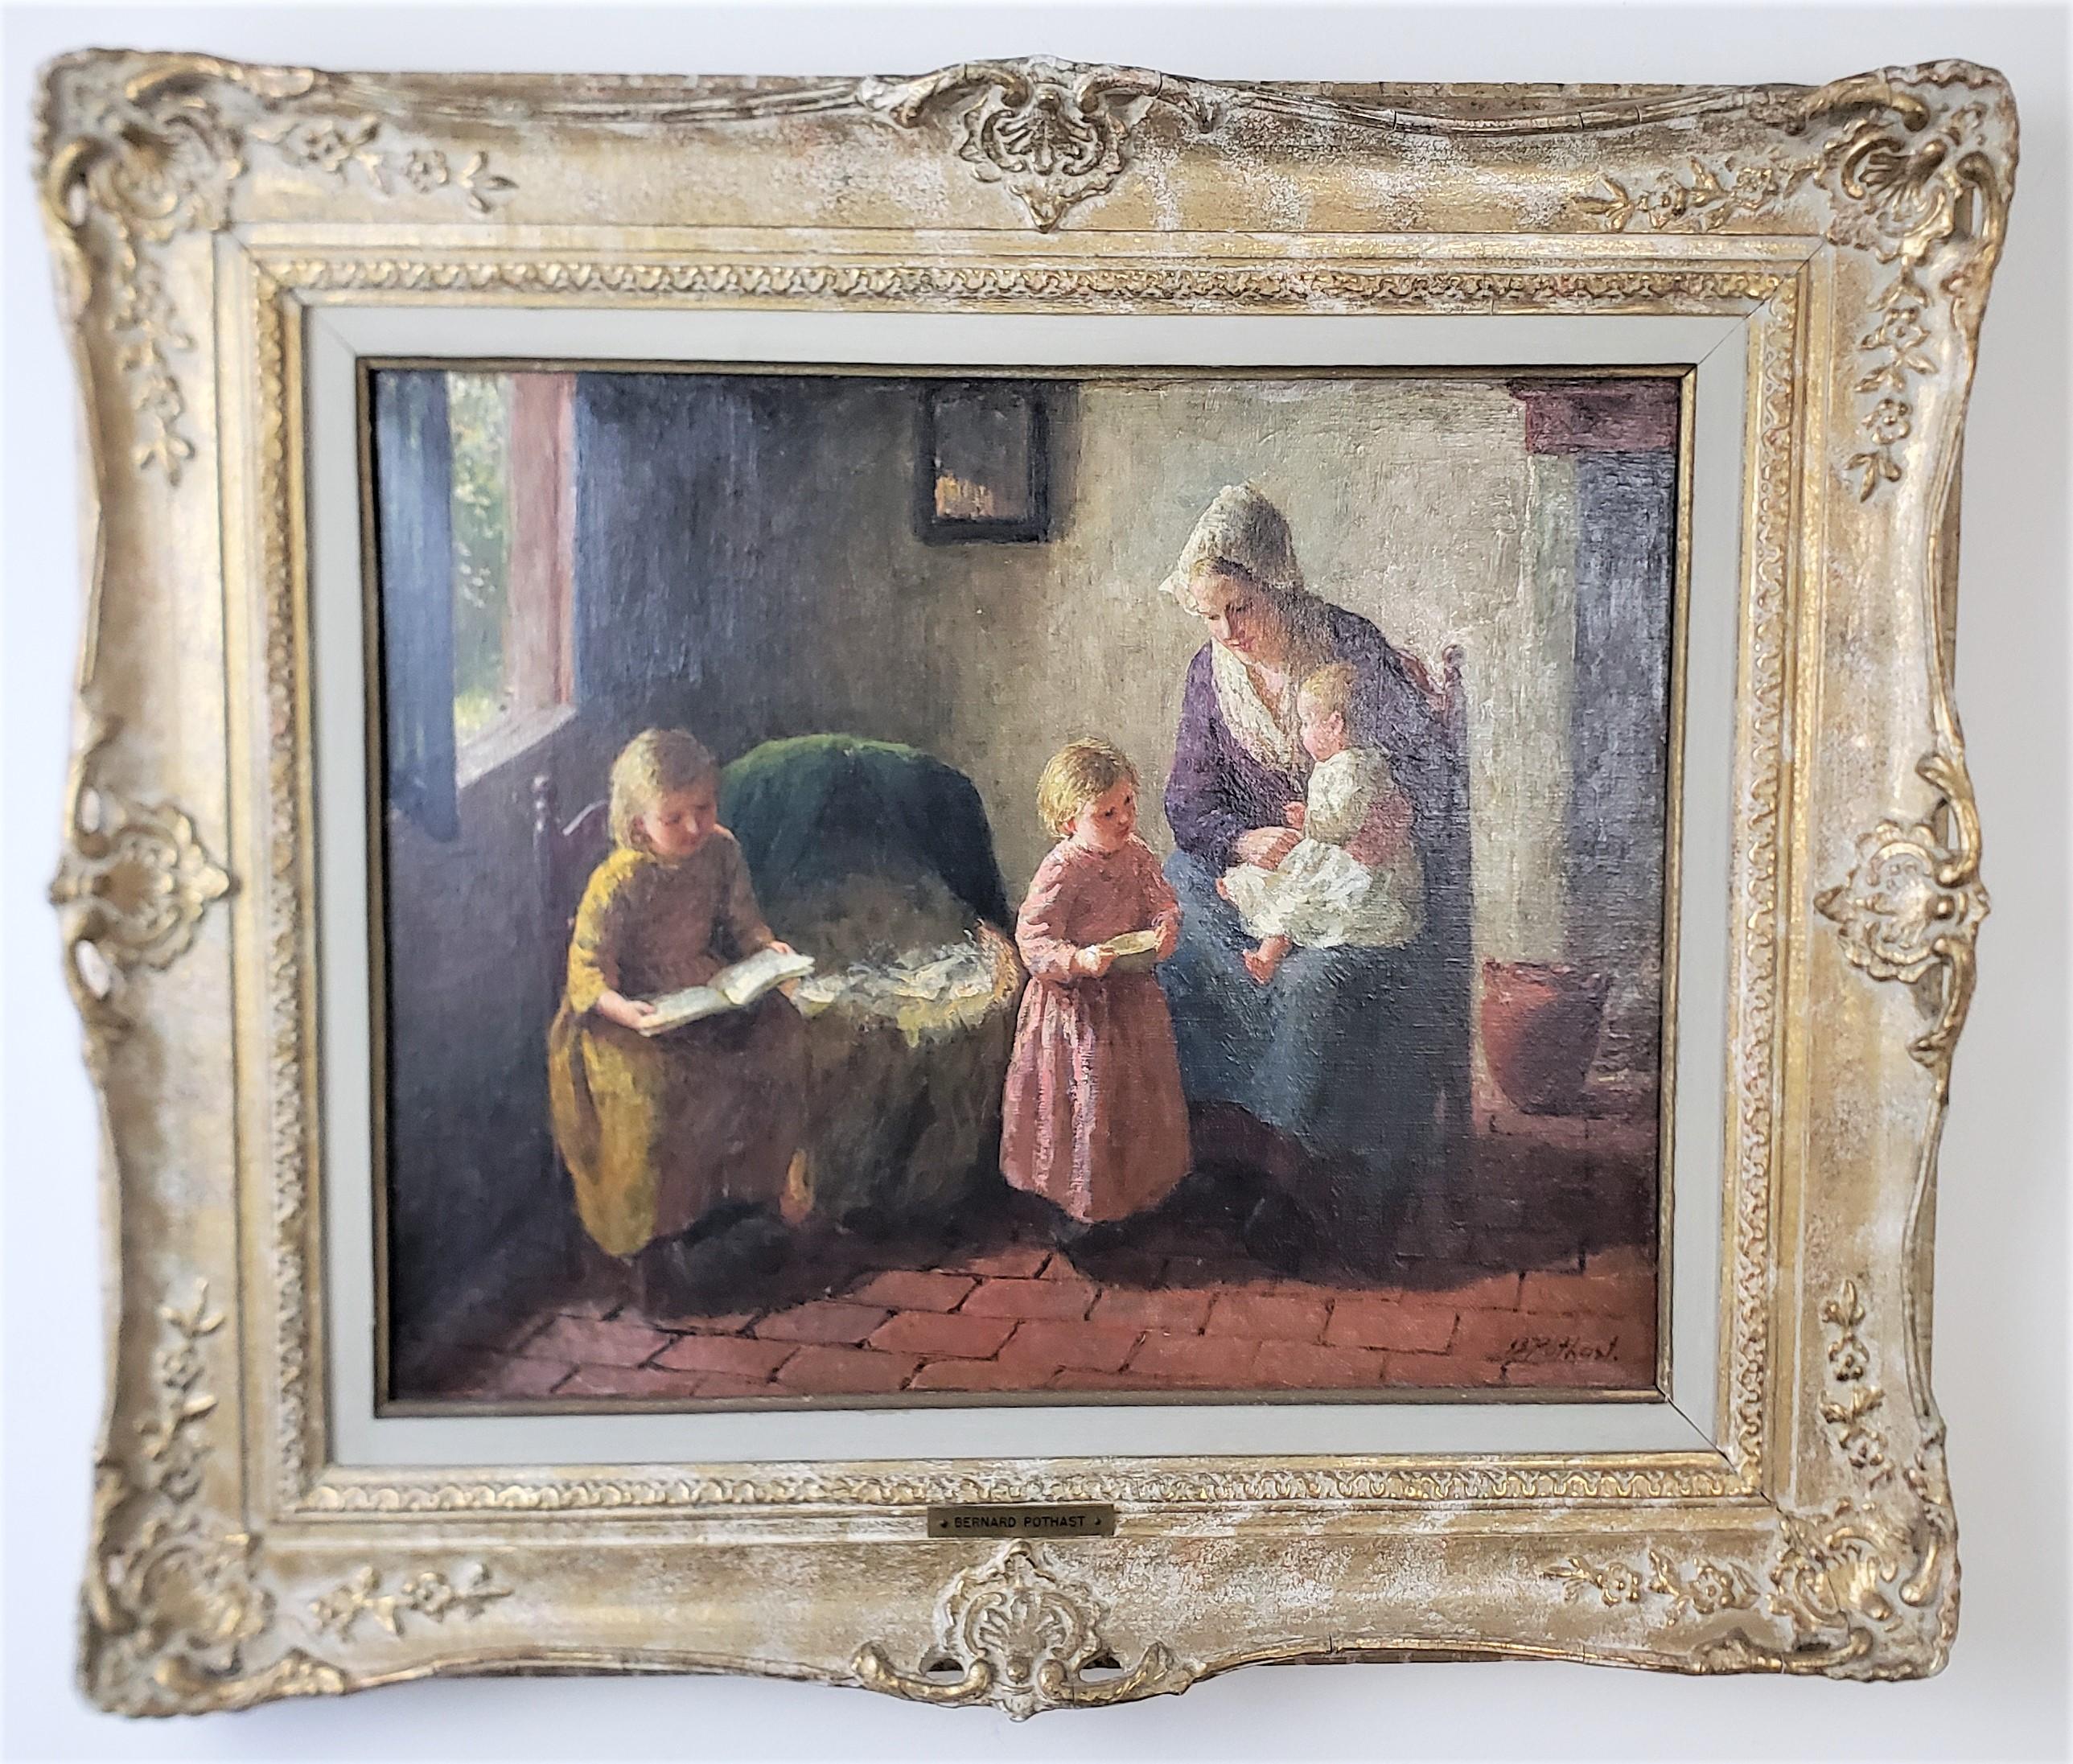 Cette ancienne peinture à l'huile encadrée a été réalisée par Bernard Pothast, des Pays-Bas, vers 1920, dans son style réaliste. La peinture est réalisée sur toile et représente une scène d'intérieur d'une mère néerlandaise en robe d'époque avec ses